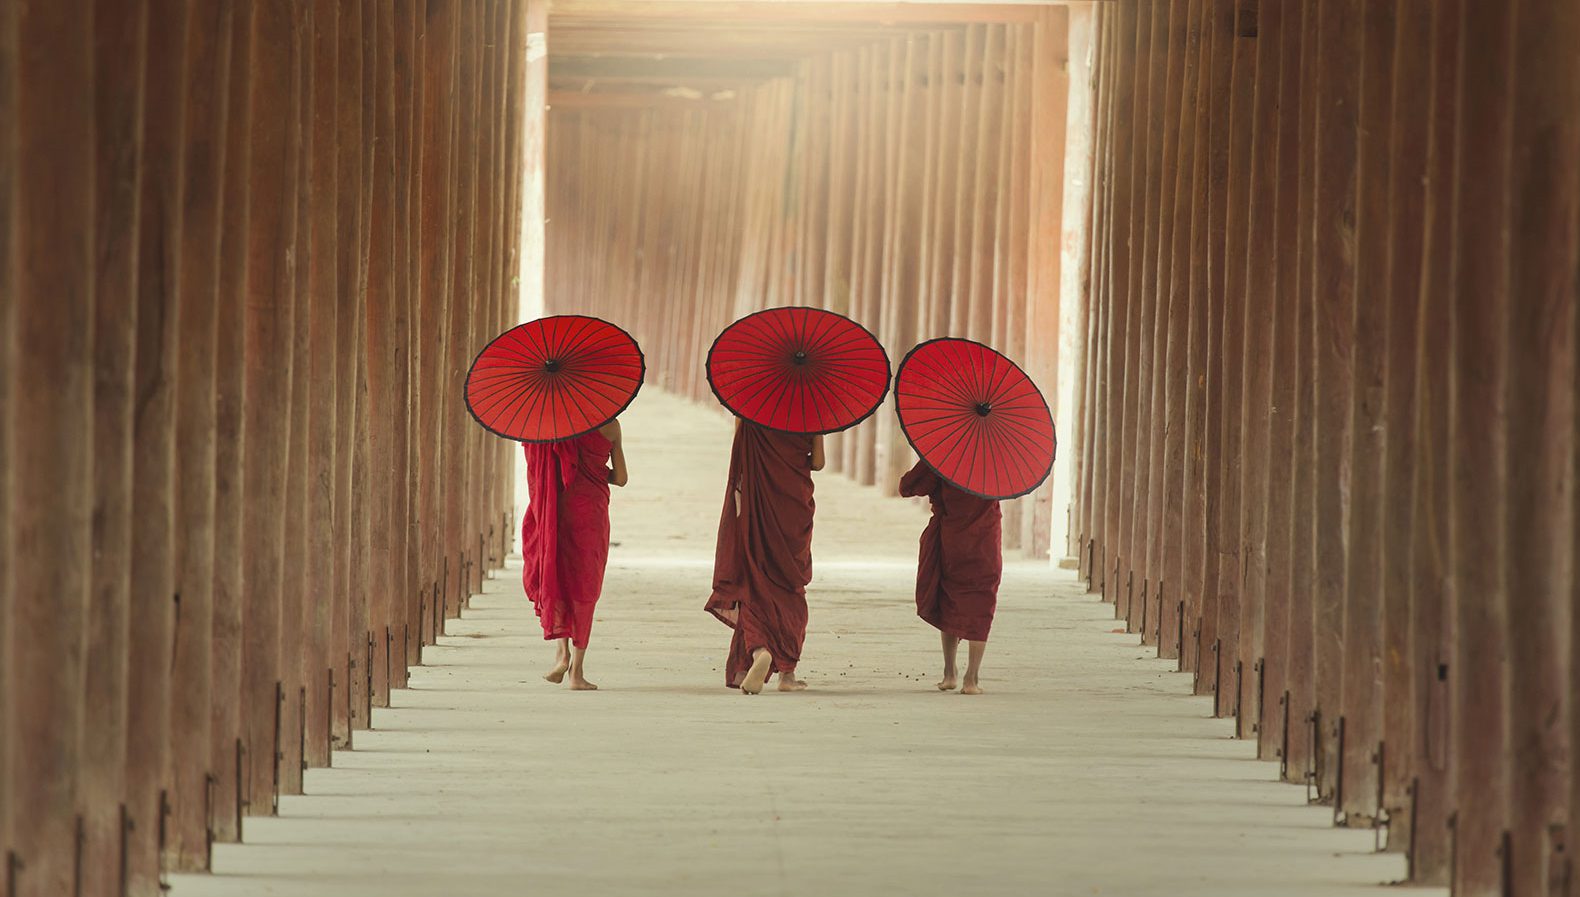 Drei junge buddhistische Mönche gehen einen Weg entlang